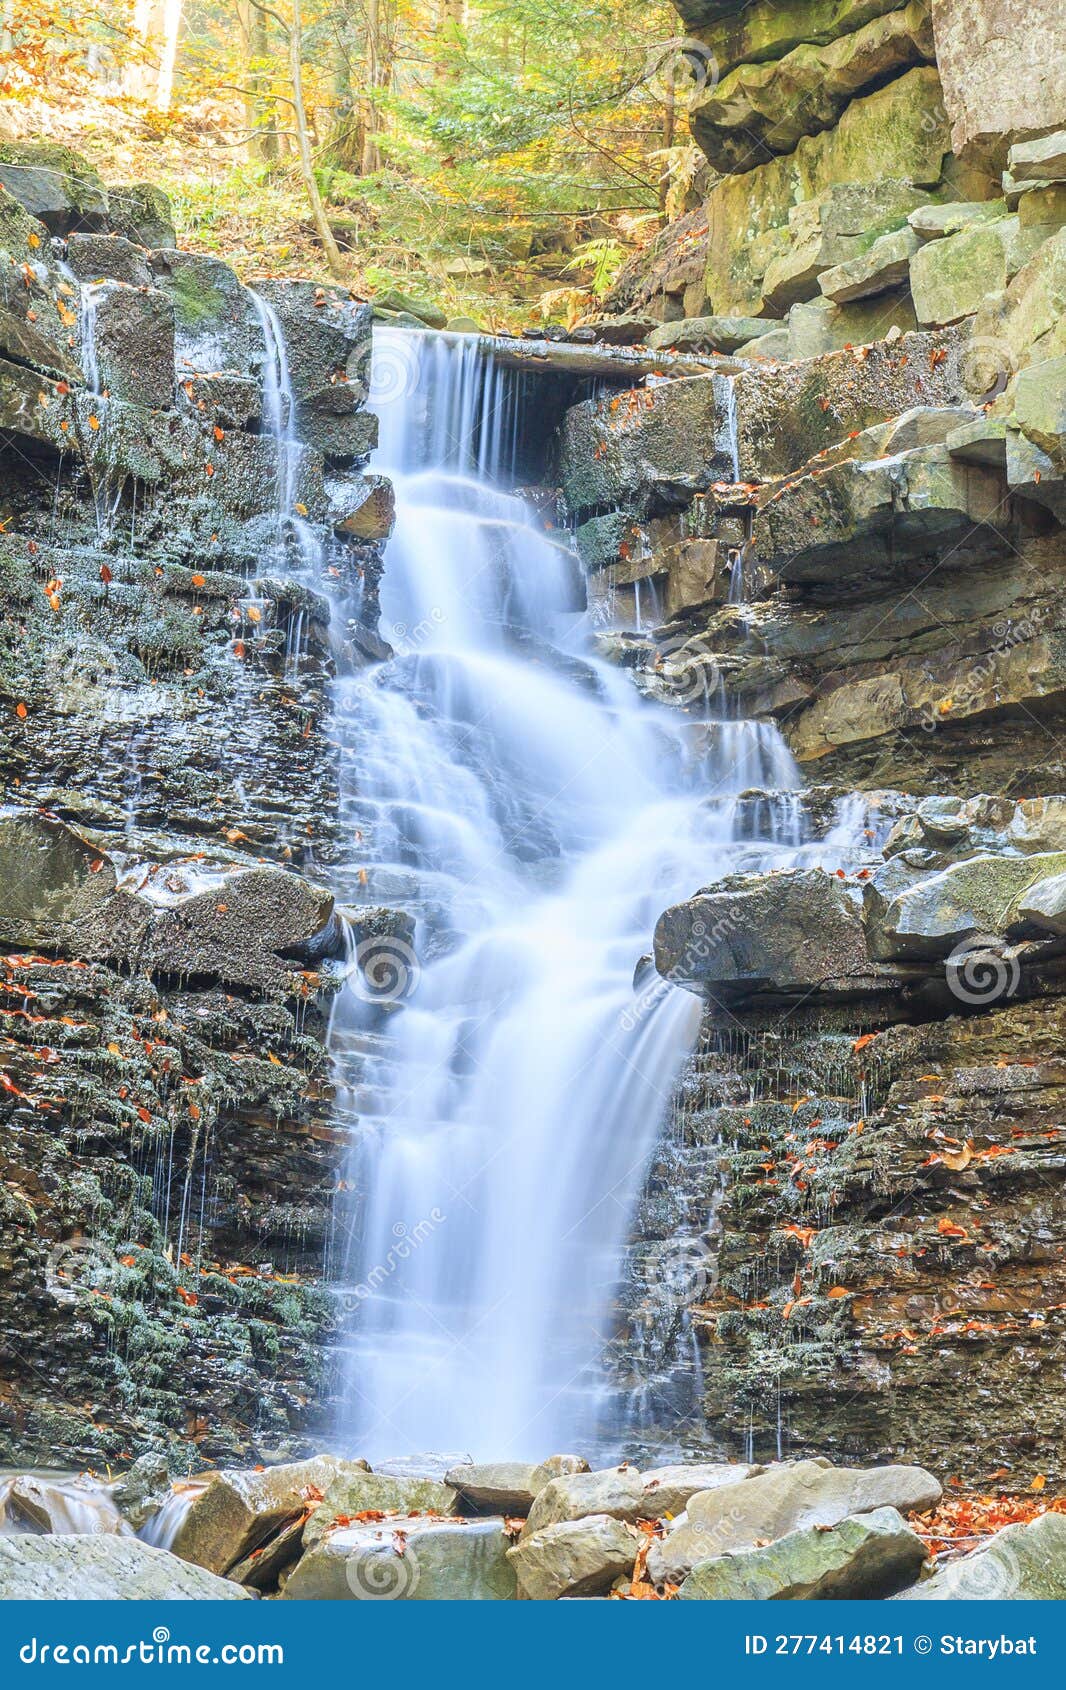 waterfall on mosorny potok in beskid zywiecki, poland